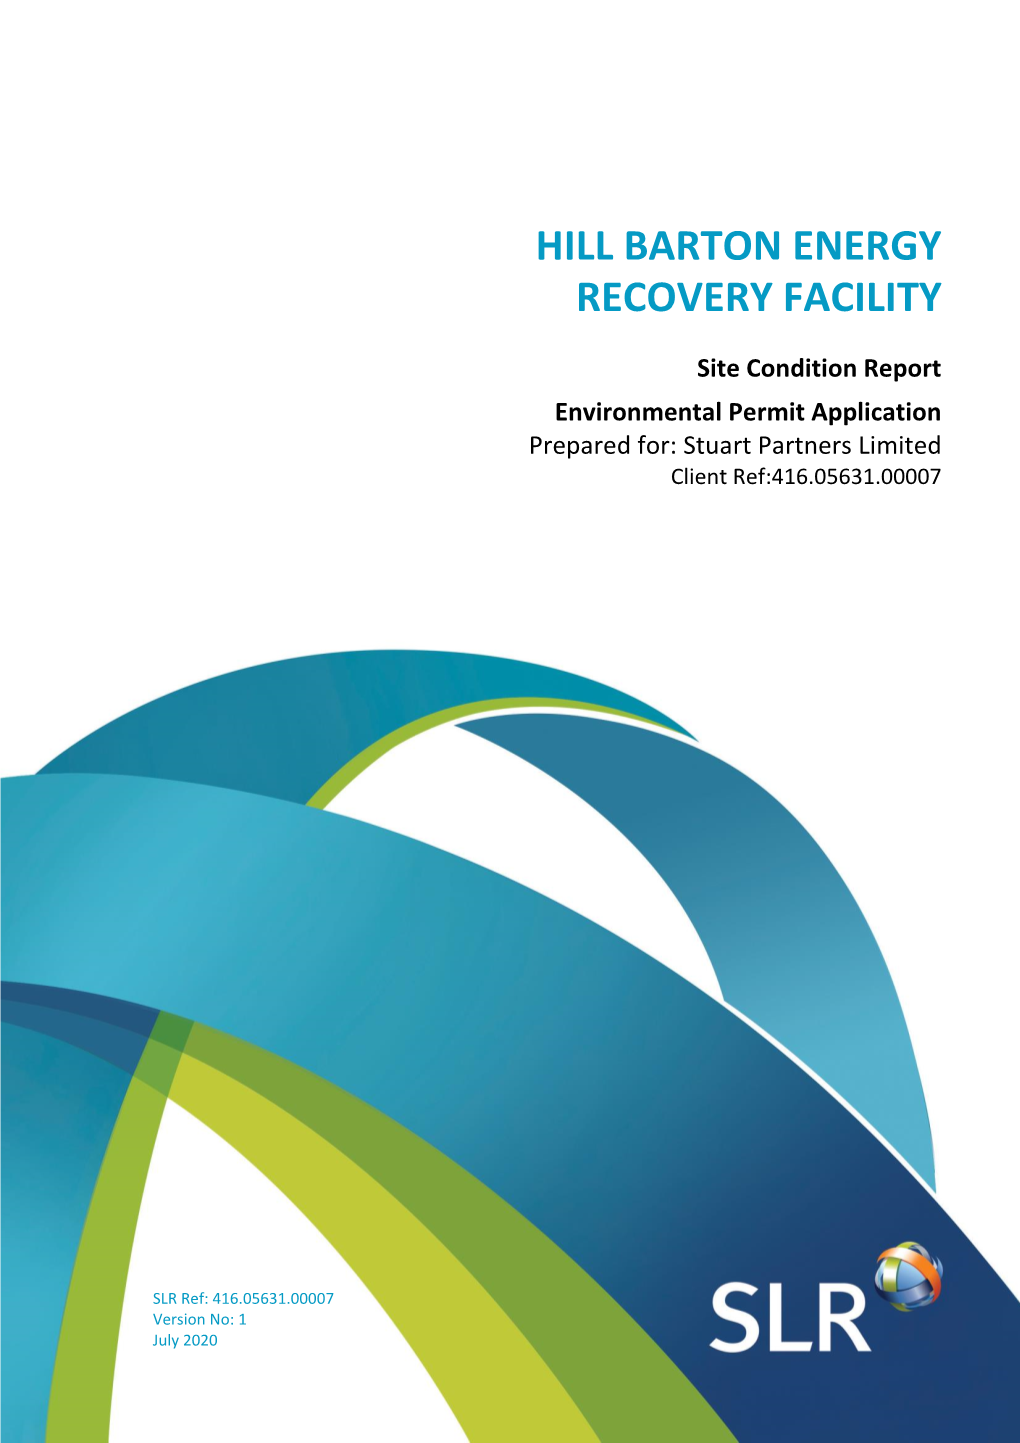 Hill Barton Energy Recovery Facility